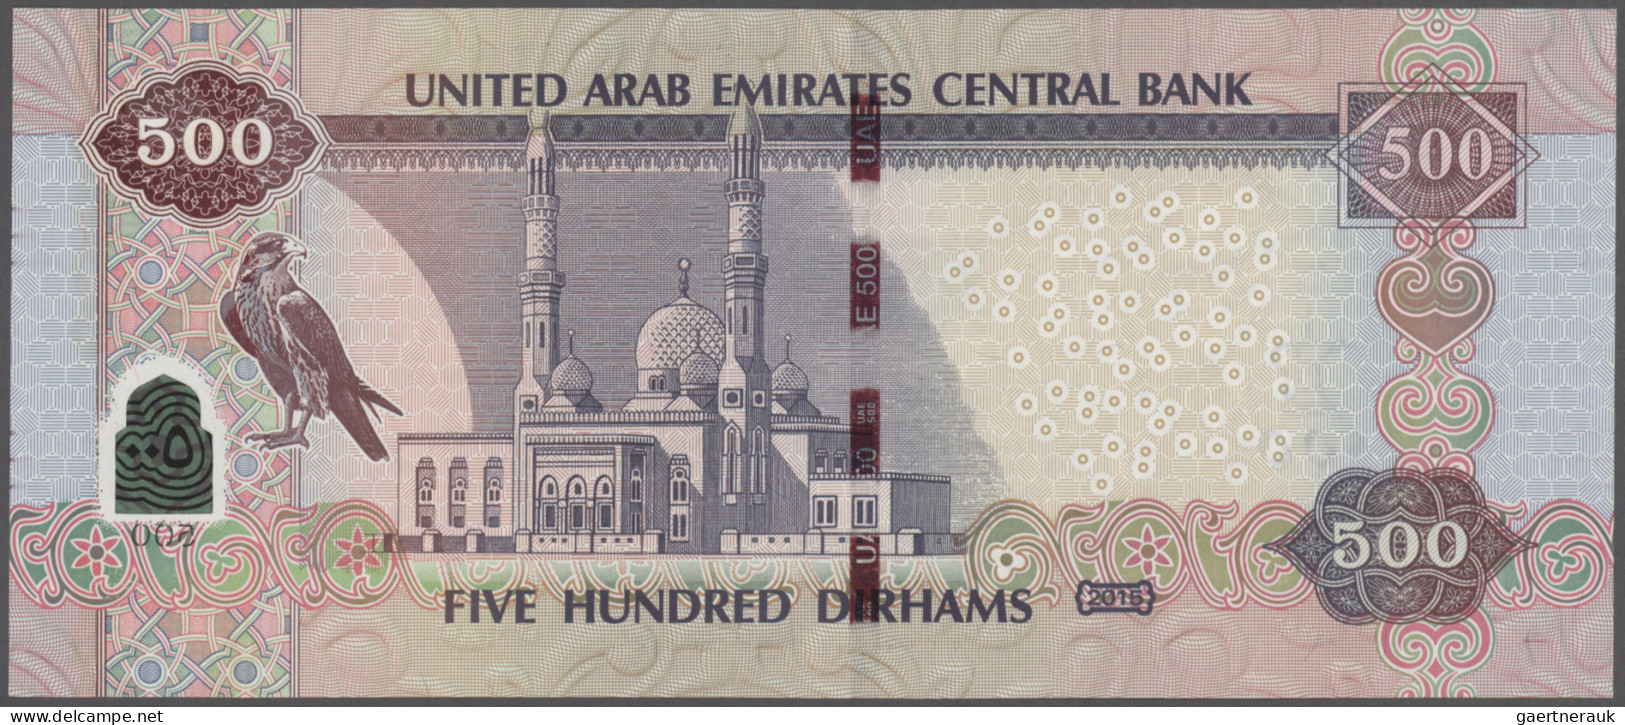 United Arab Emirates: United Arab Emirates Central Bank 500 Dirhams 2015 (AH1436 - Verenigde Arabische Emiraten